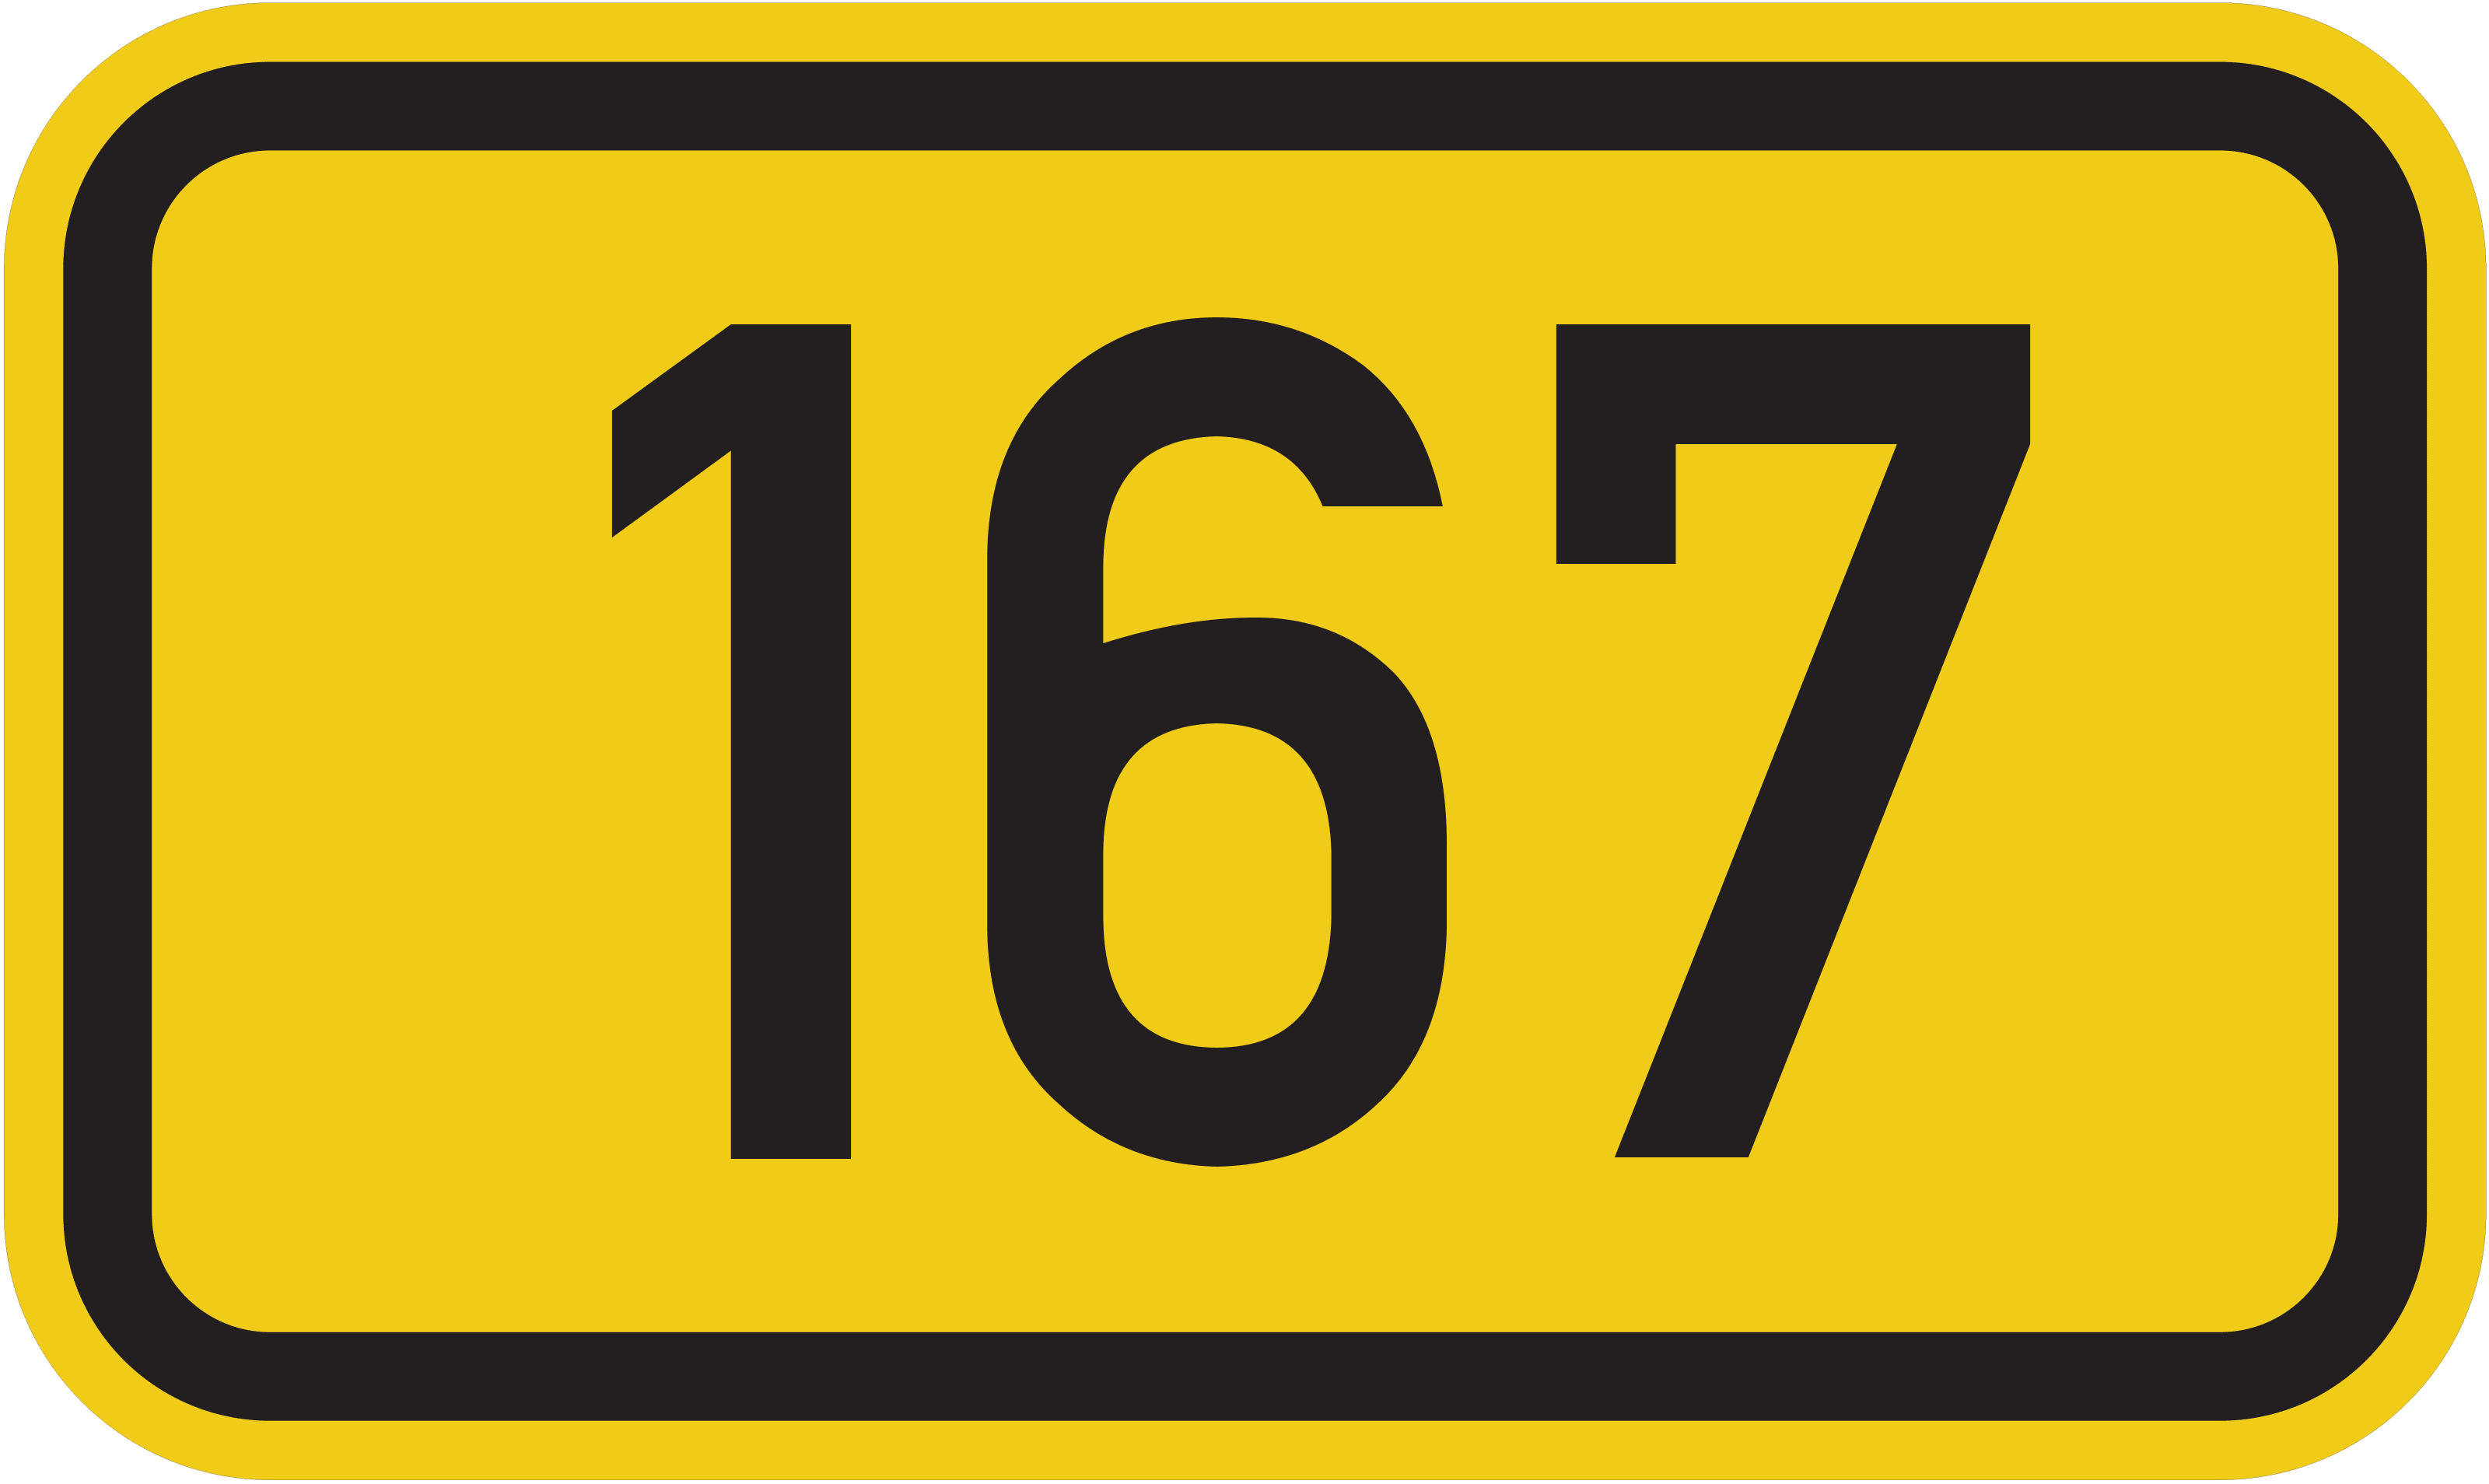 Bundesstraße B 167